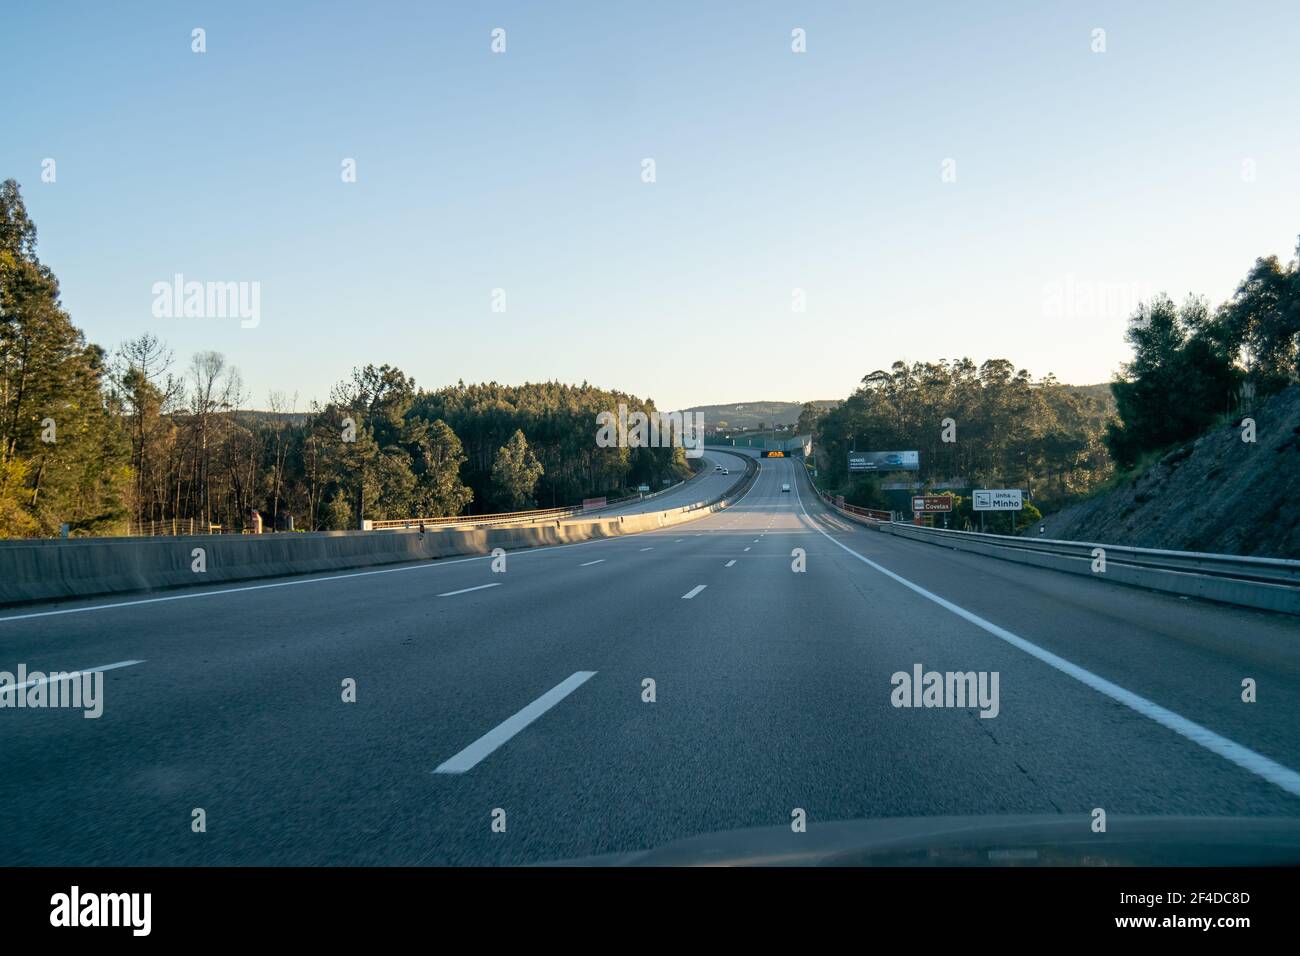 Fahren oder Reisen auf Autobahnen oder Autobahnen. Portugiesisch bezahlt Autobahnen von Brisa Auto-estradas de Portugal. Auto auf der Autobahn A3. Stockfoto